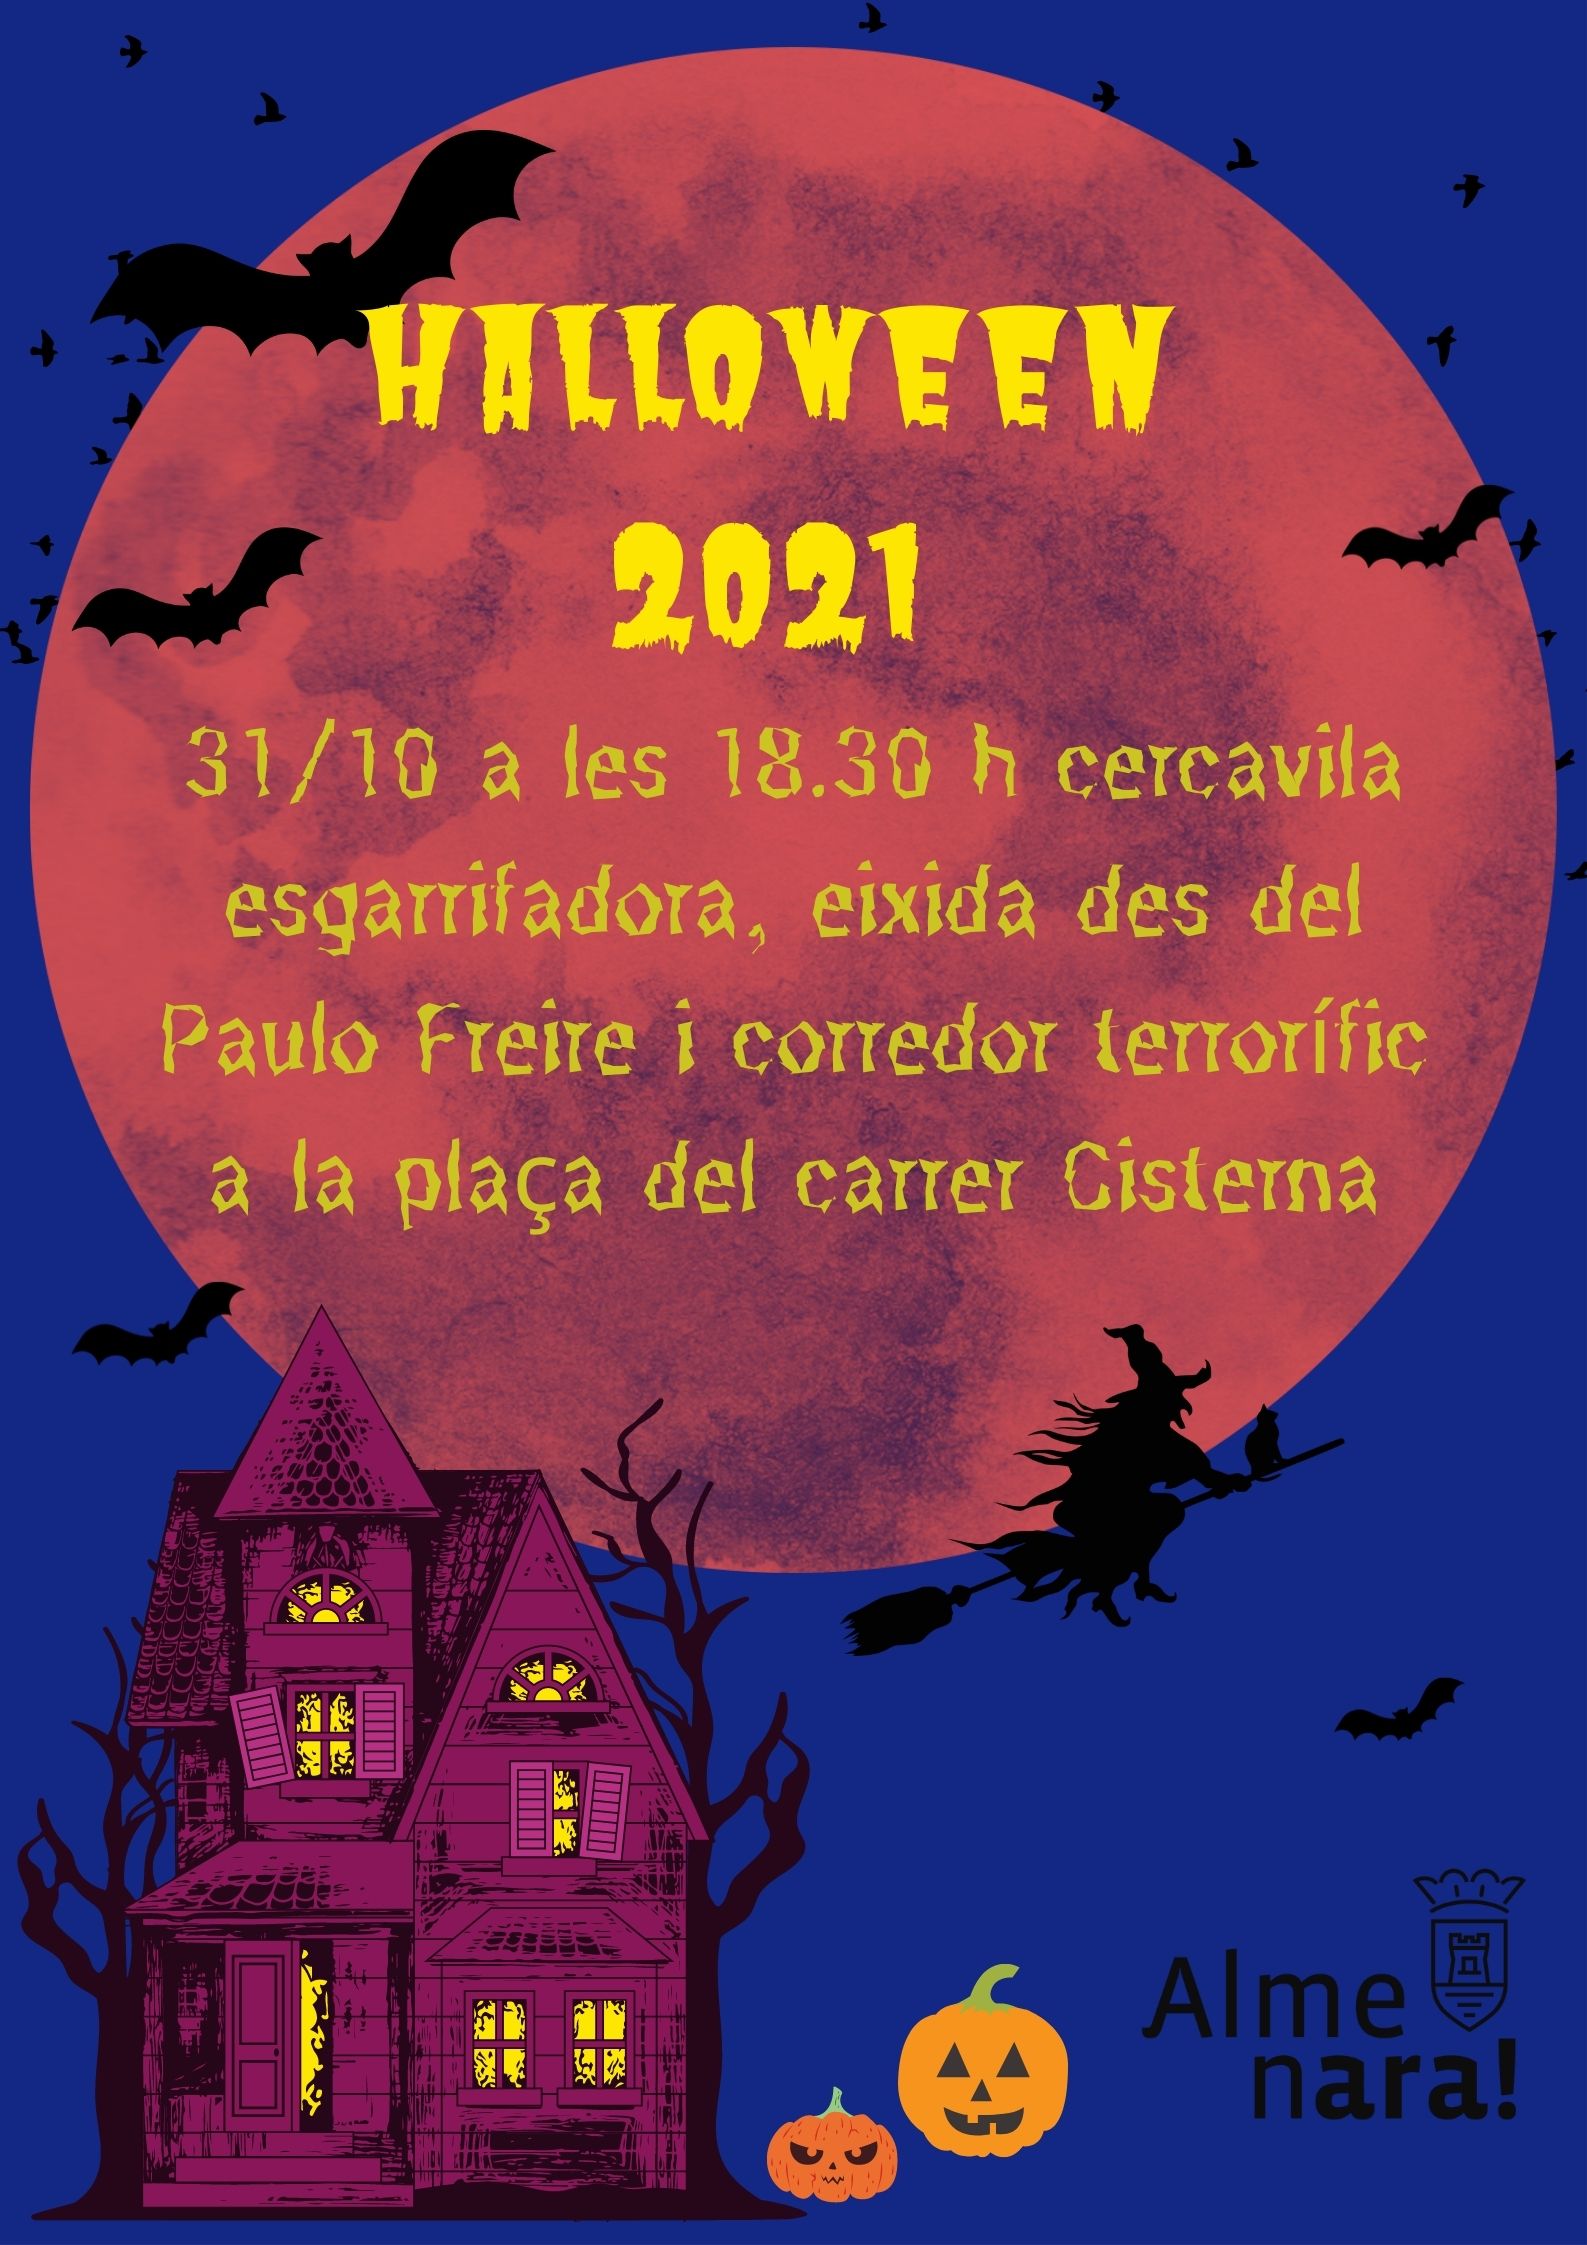 La fiesta de Halloween de Almenara tendrá un pasaje del terror para público familiar